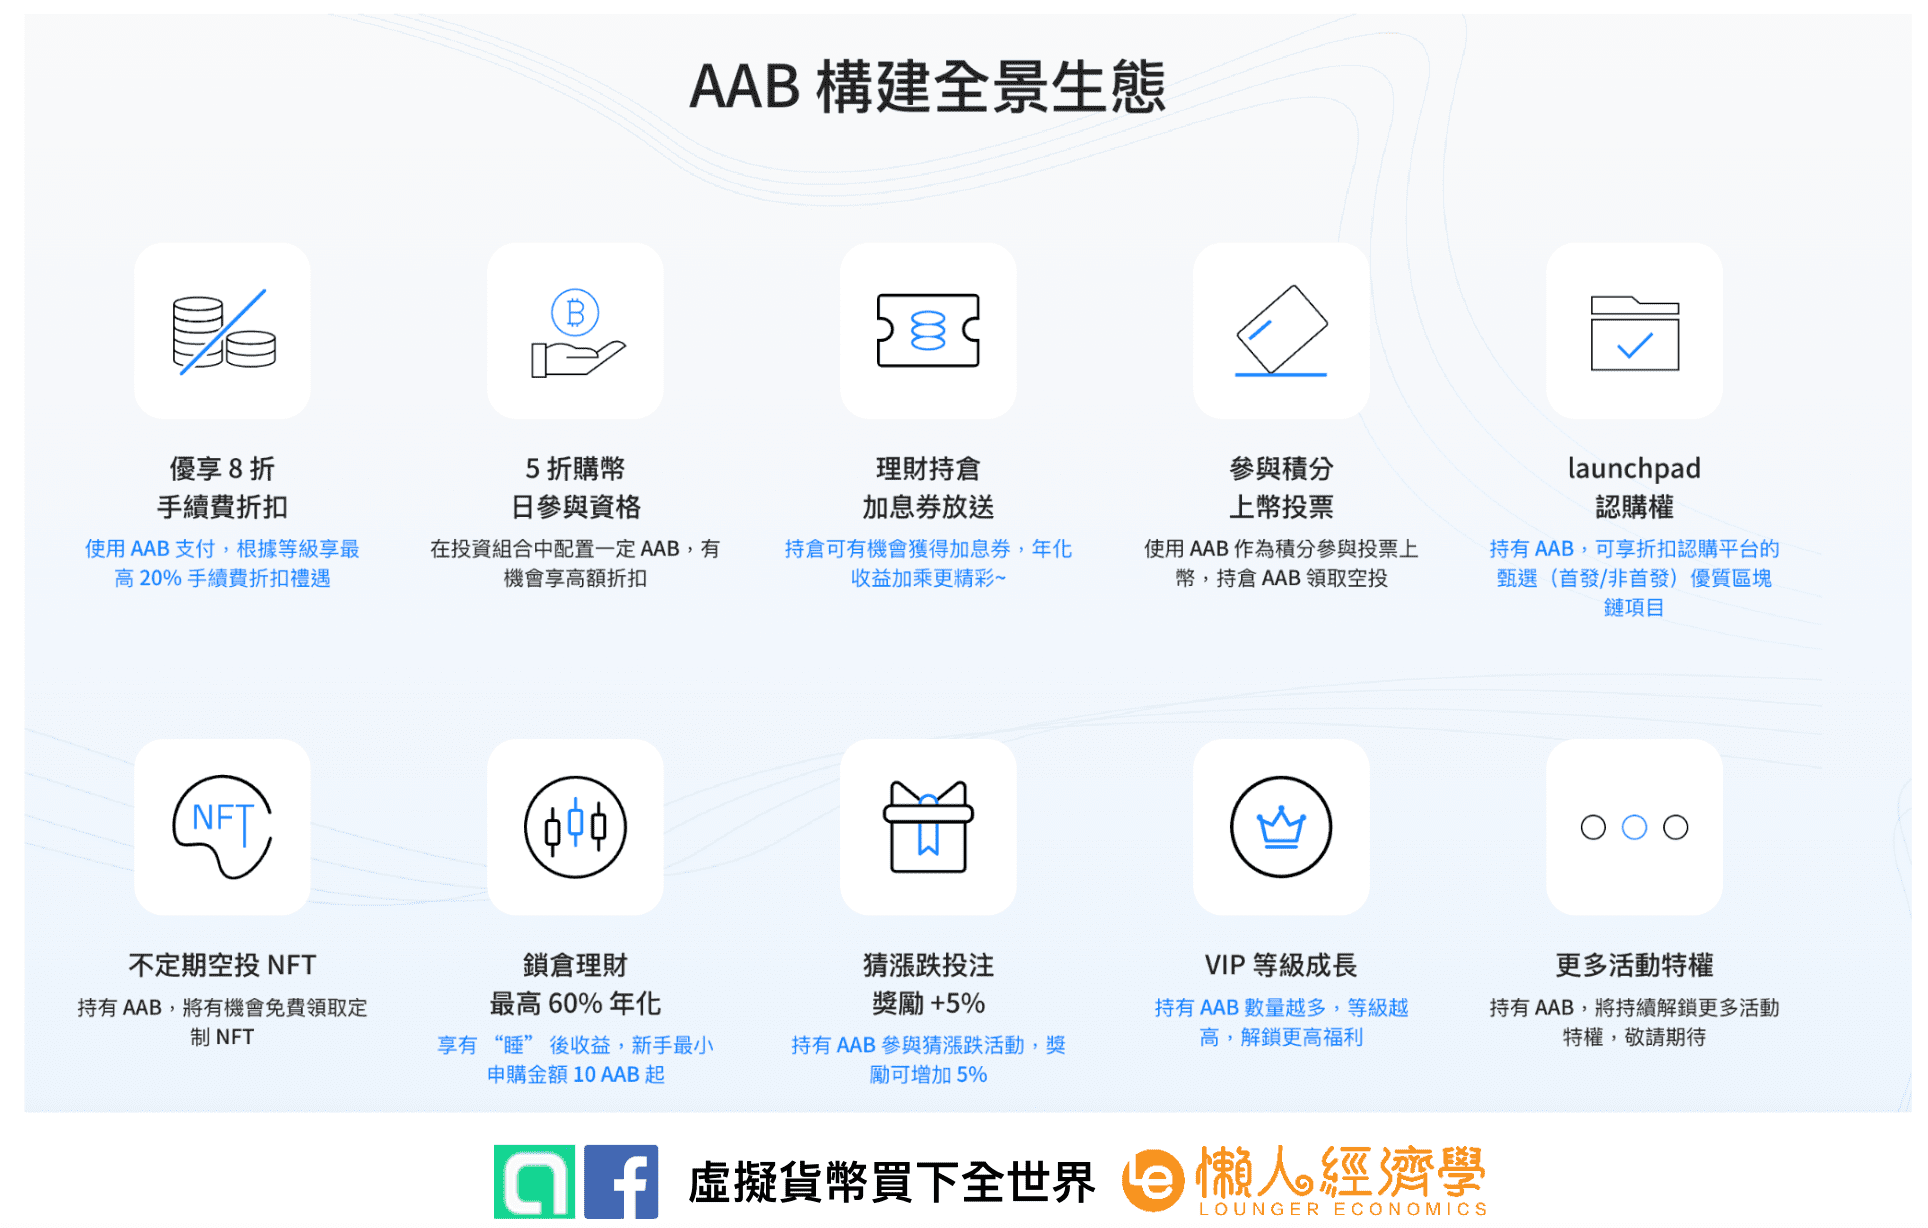 AAX AAB 平台幣功能與介紹